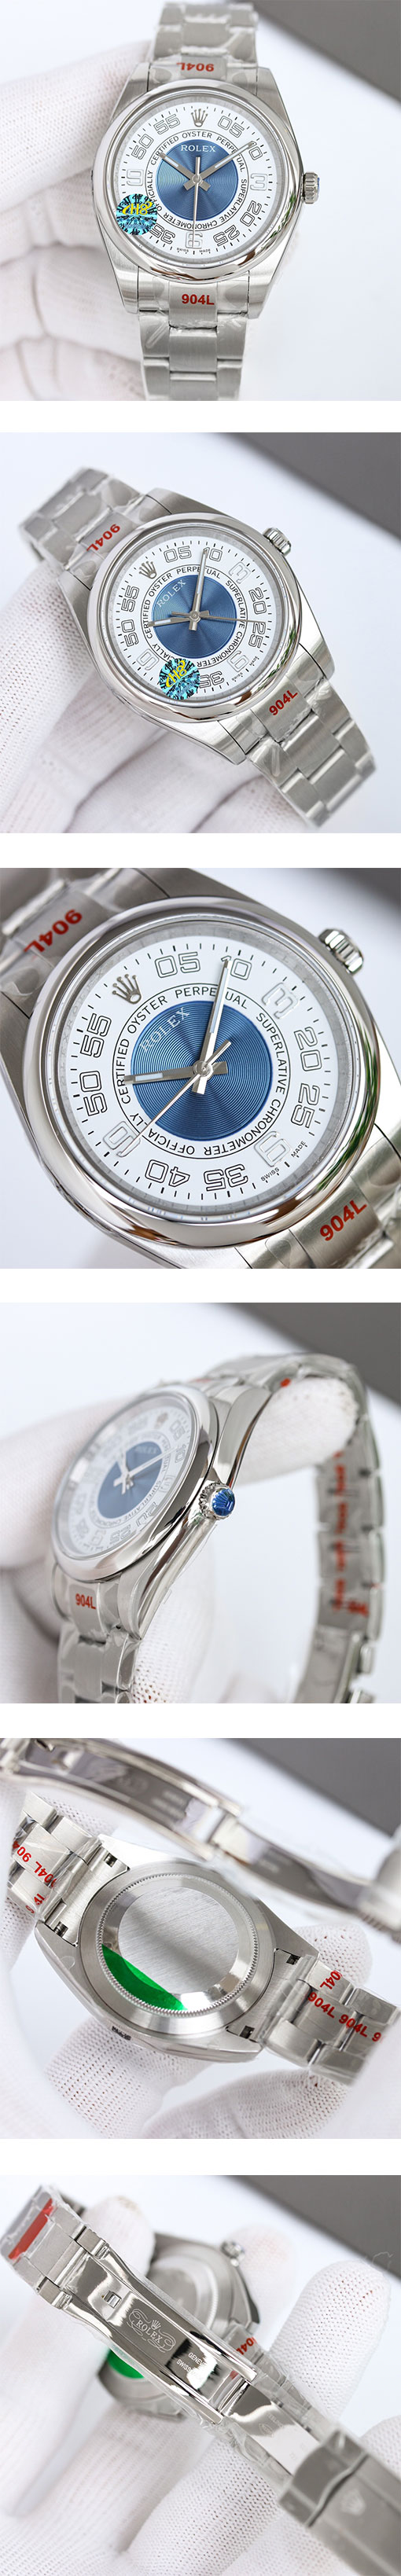 ロレックスレプリカ時計通販 オイスターパーペチュアル 116000 シルバー・ブルー サークルアラビア